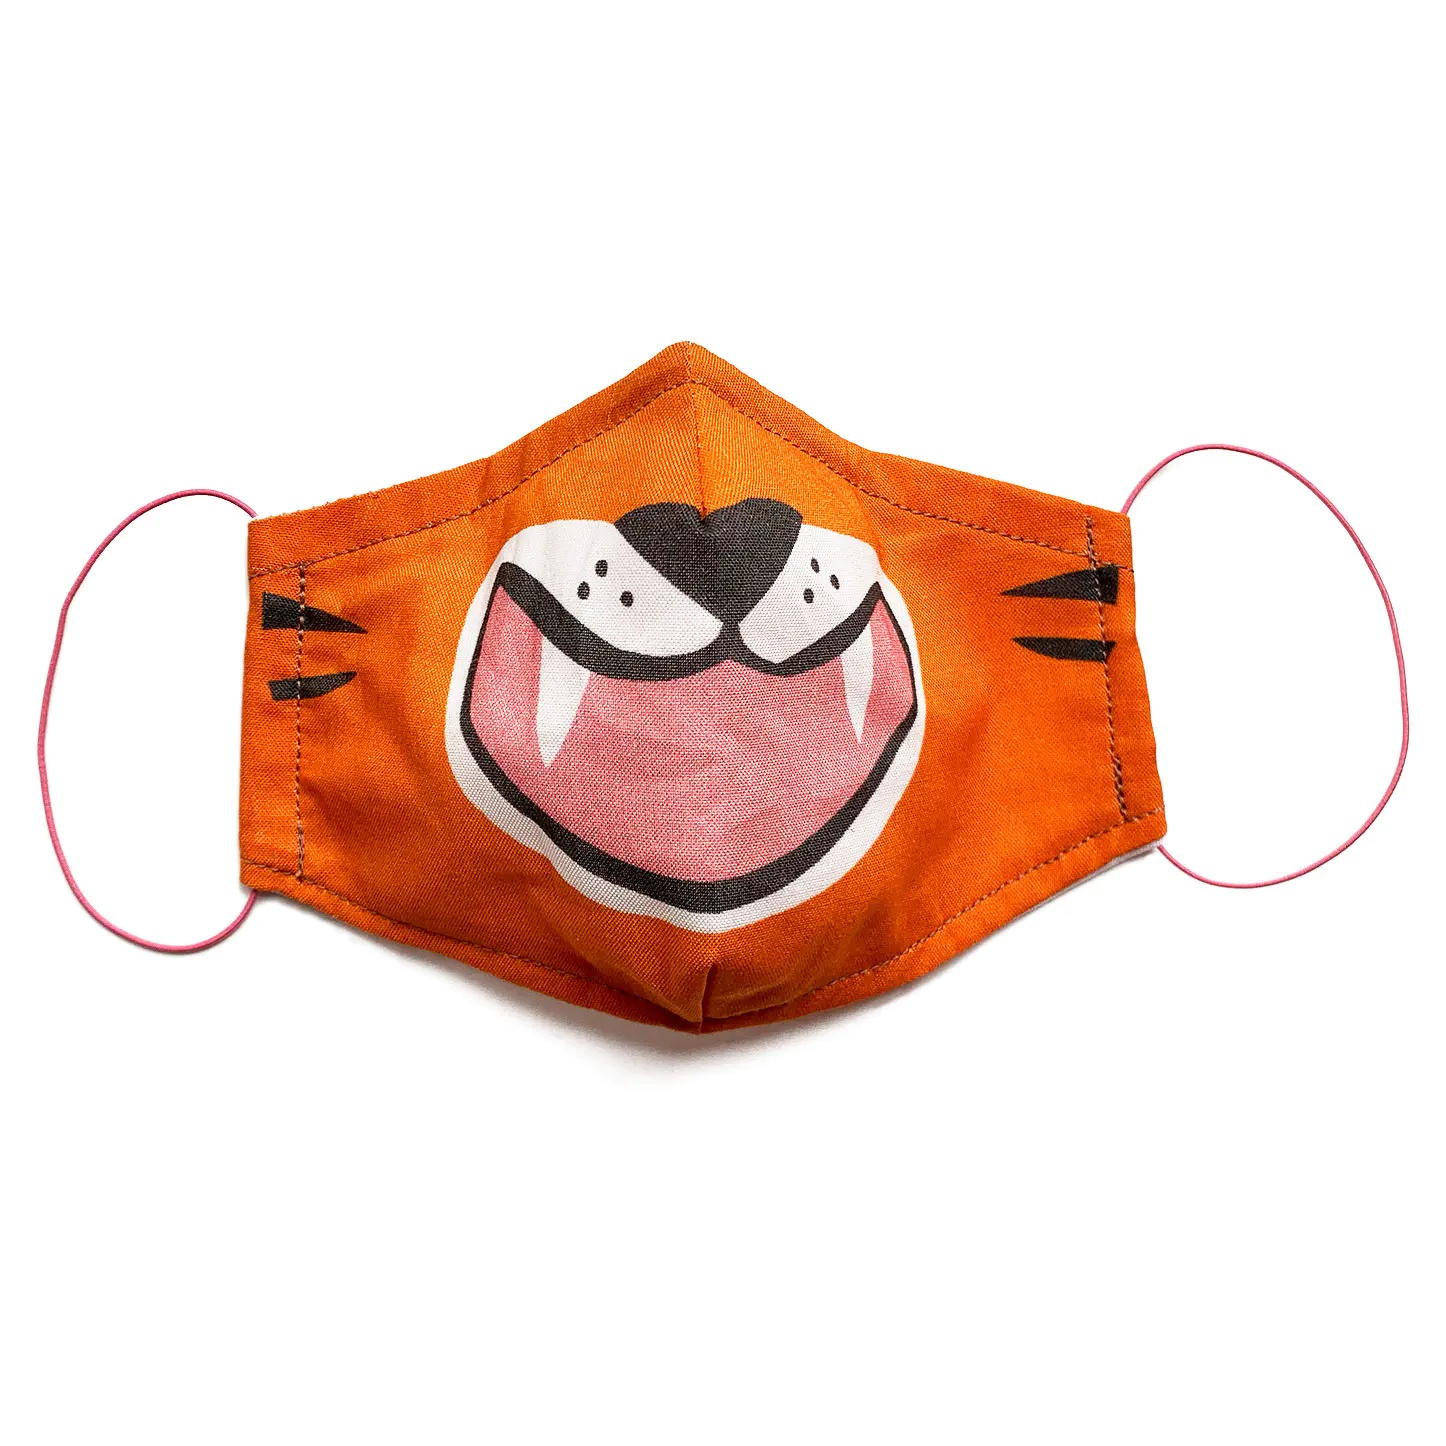 Freisteller eines Mundnasenschutzs mit aufgedrucktem Tiger-Motiv.